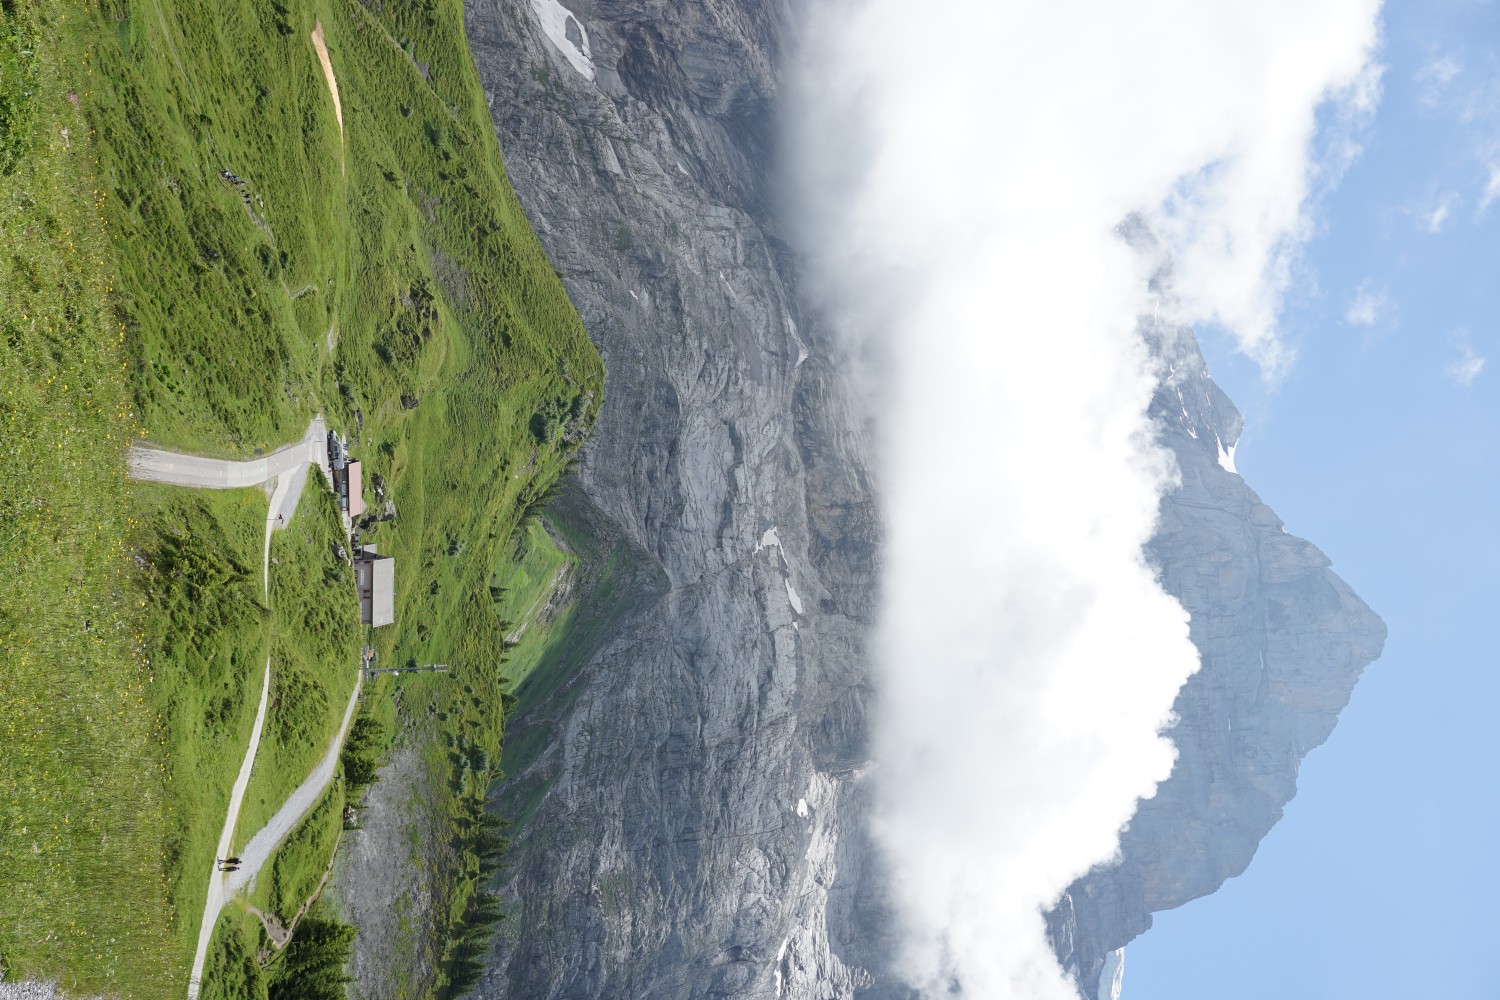 Eintreffen am Ziel auf der Grossen Scheidegg. Dahinter das Wetterhorn. Bild: Reto Wissmann